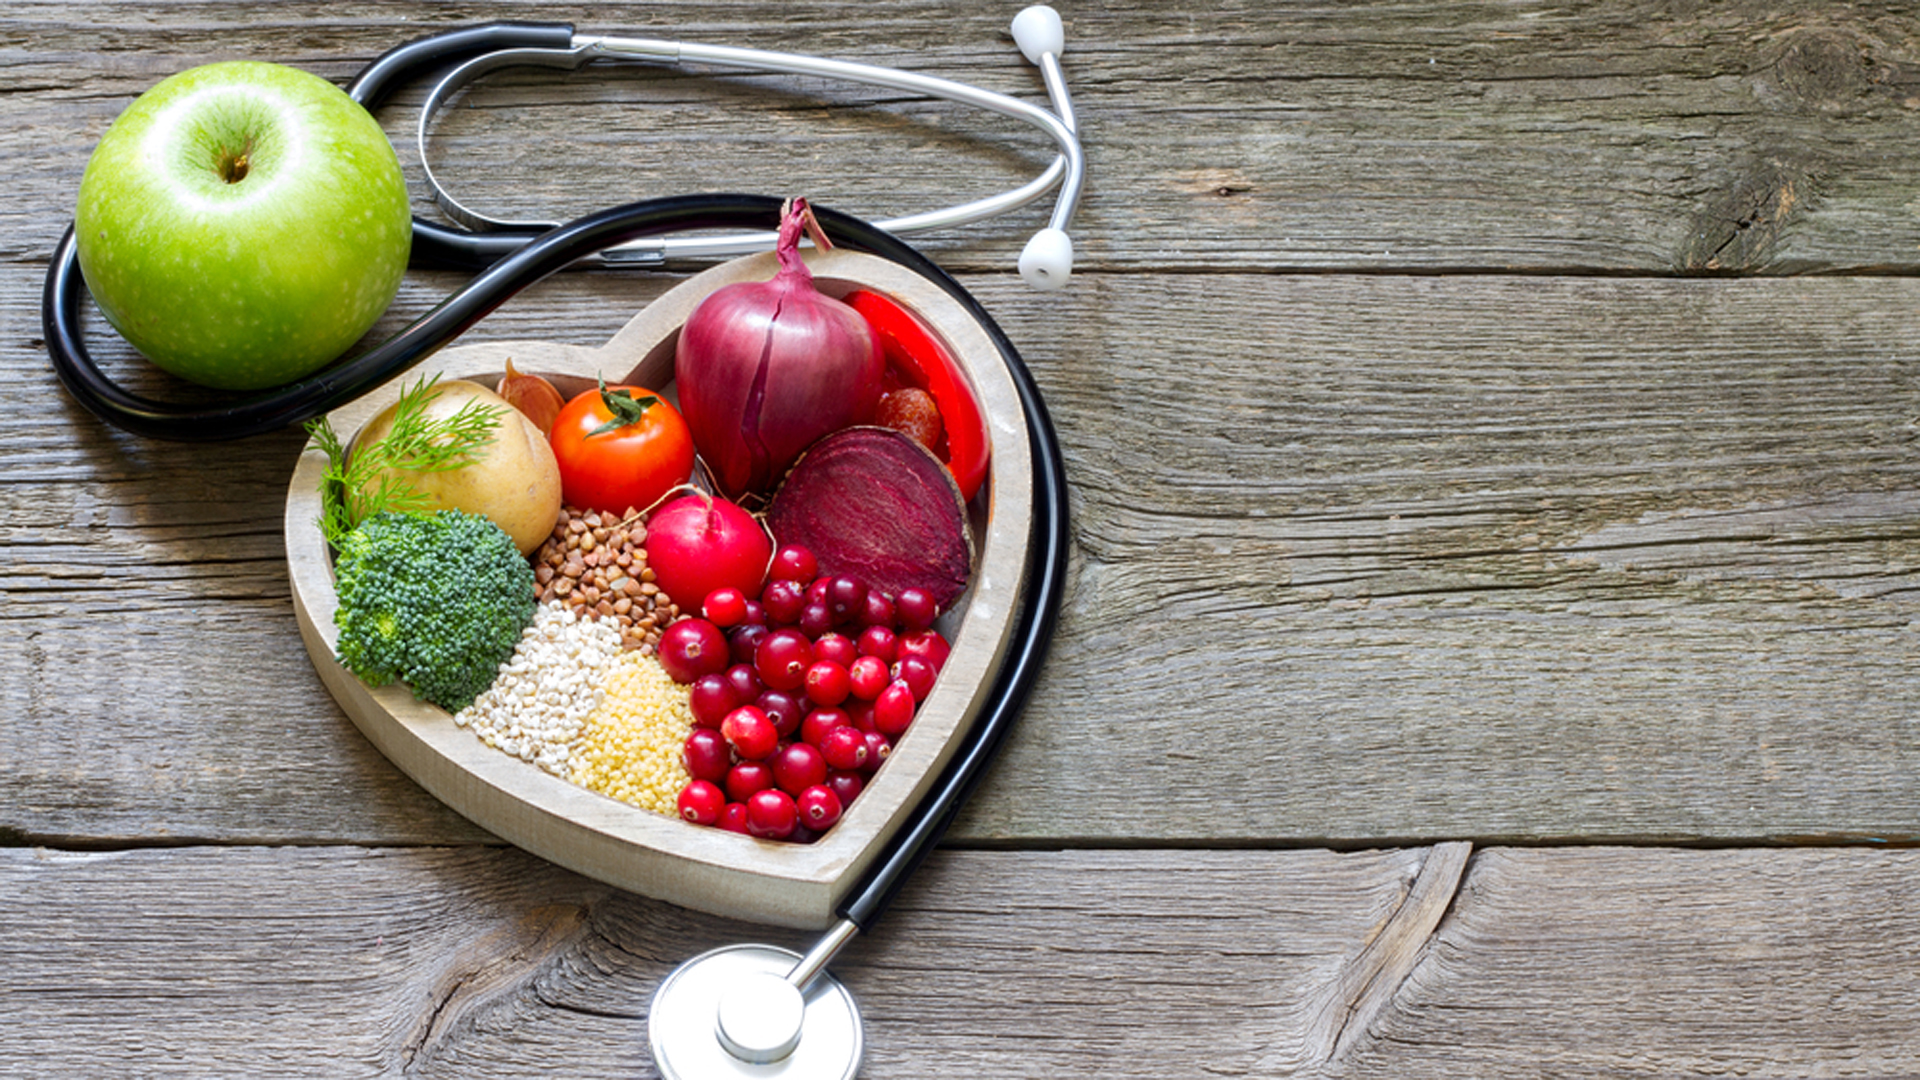 Una buena alimentación a base de verduras y frutas mantiene un corazón sano (Shutterstock)